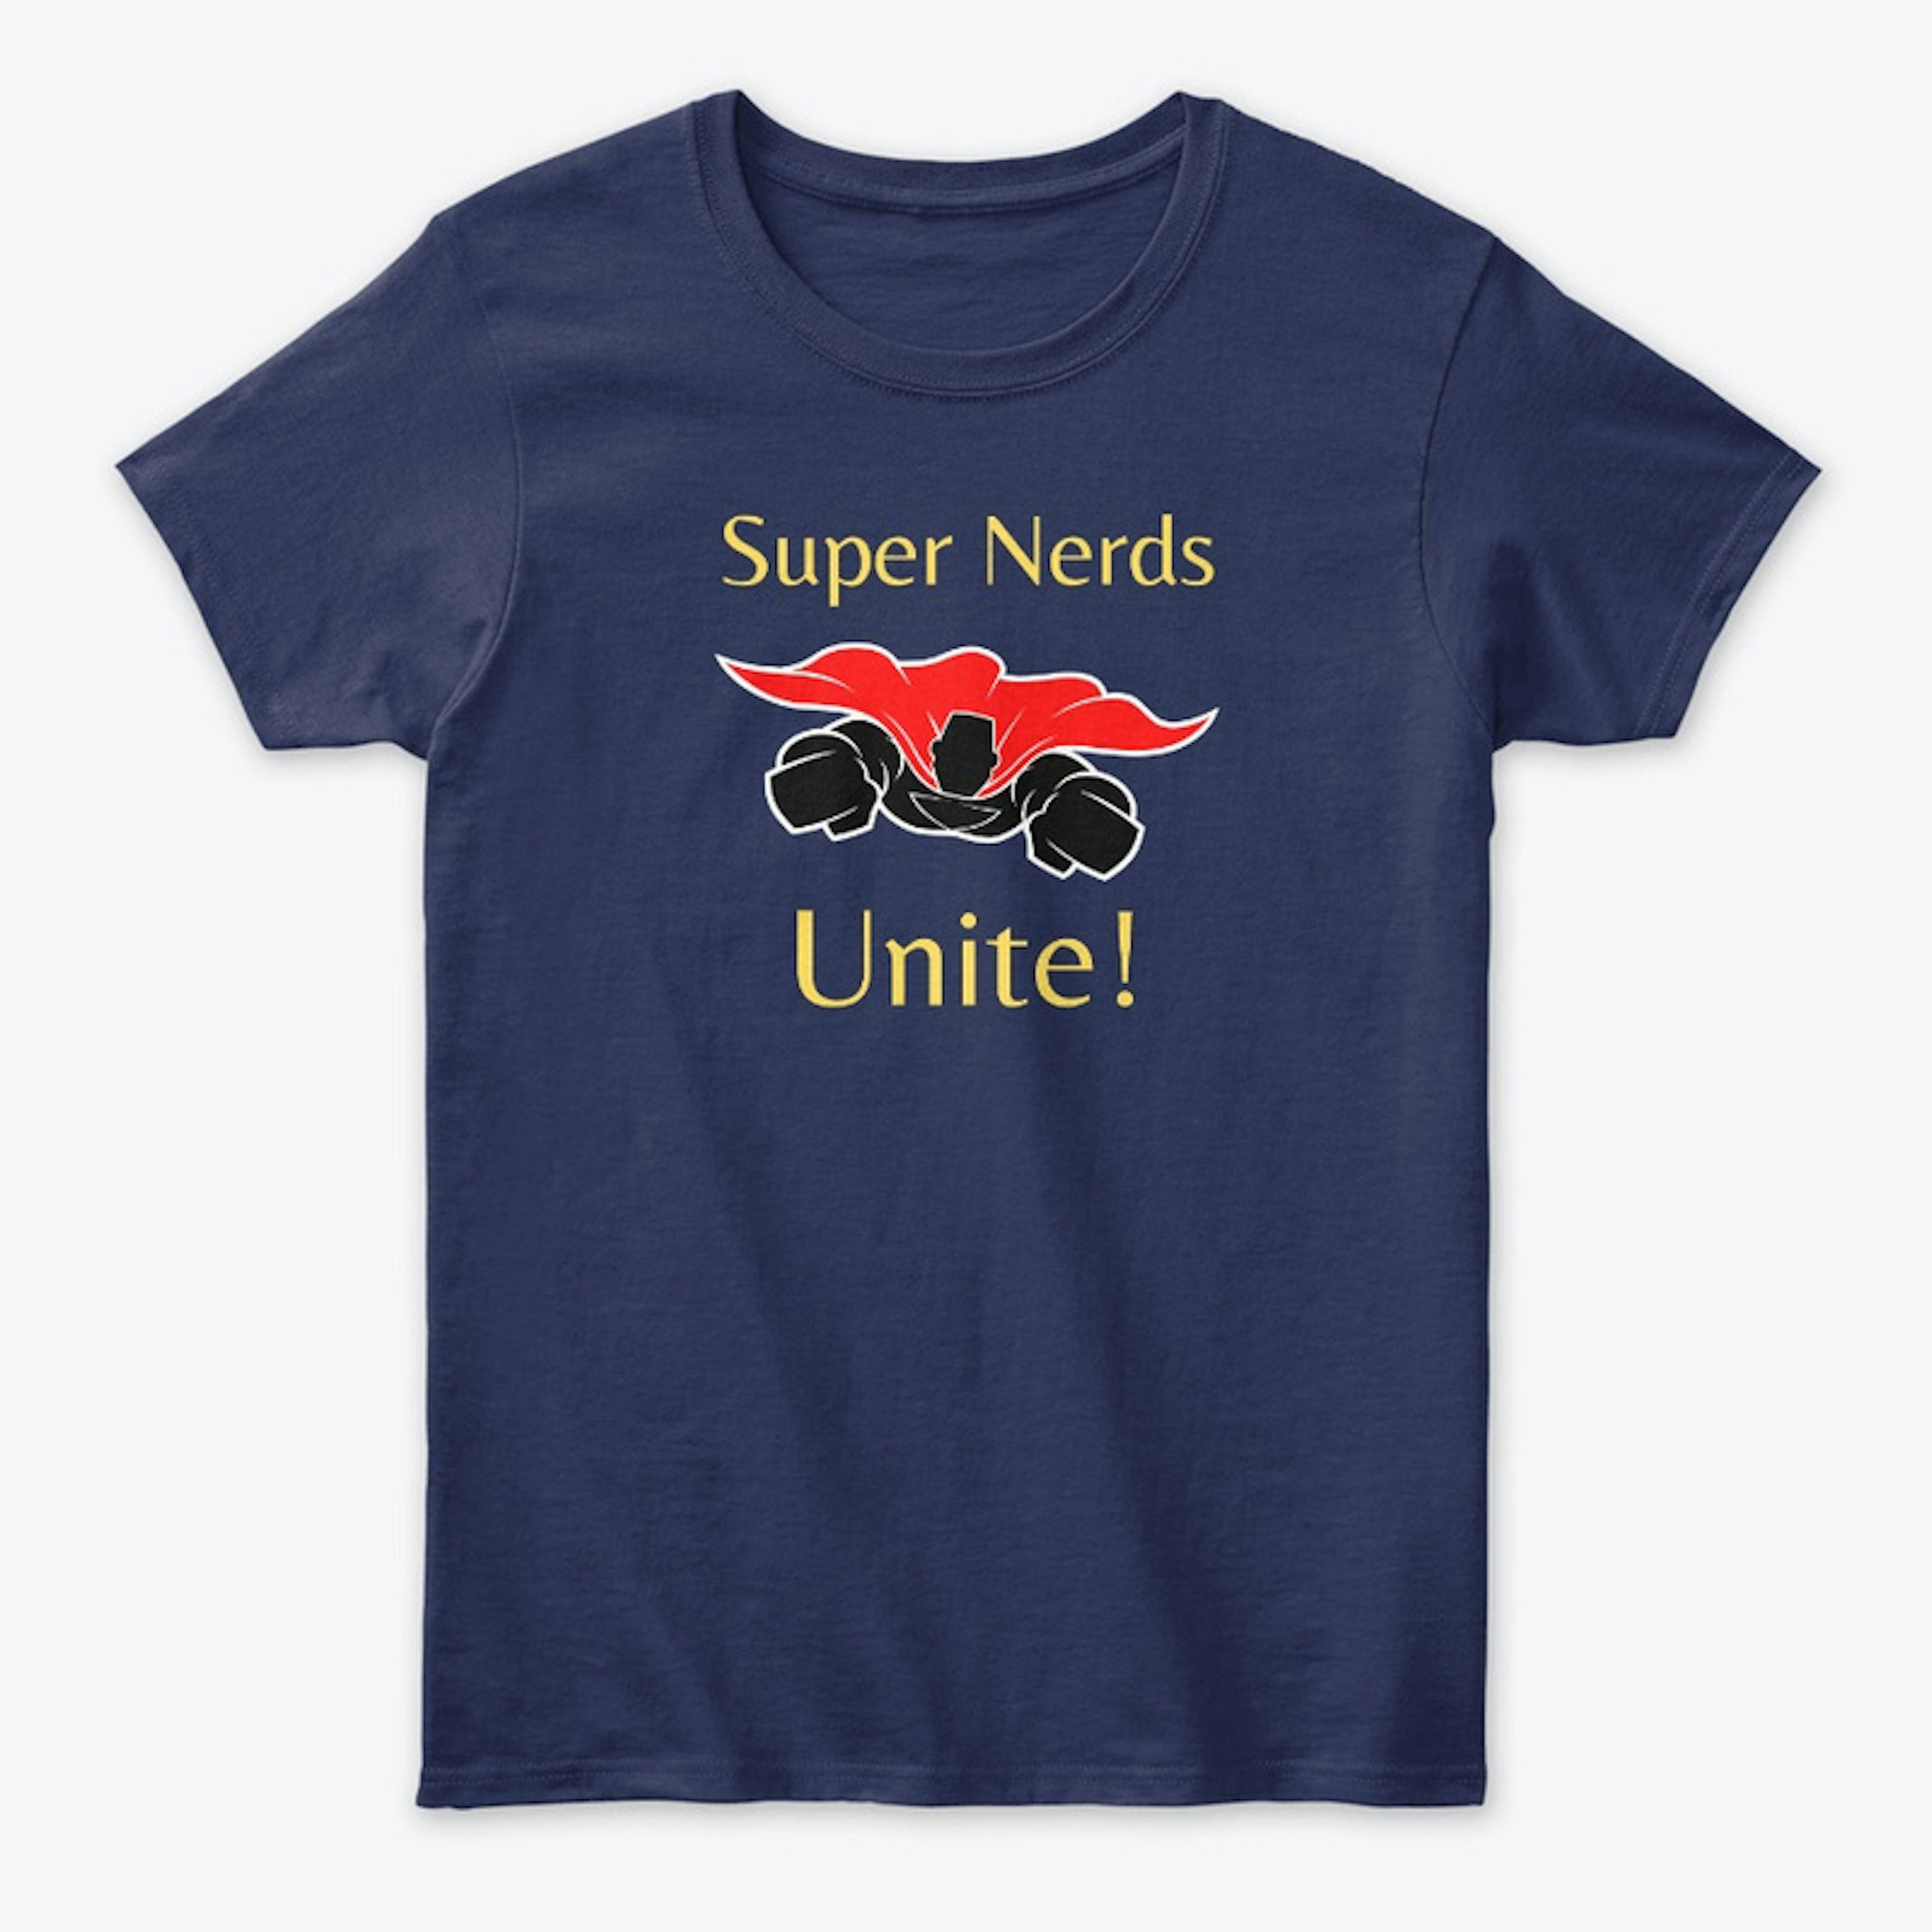 Super Nerds Unite!